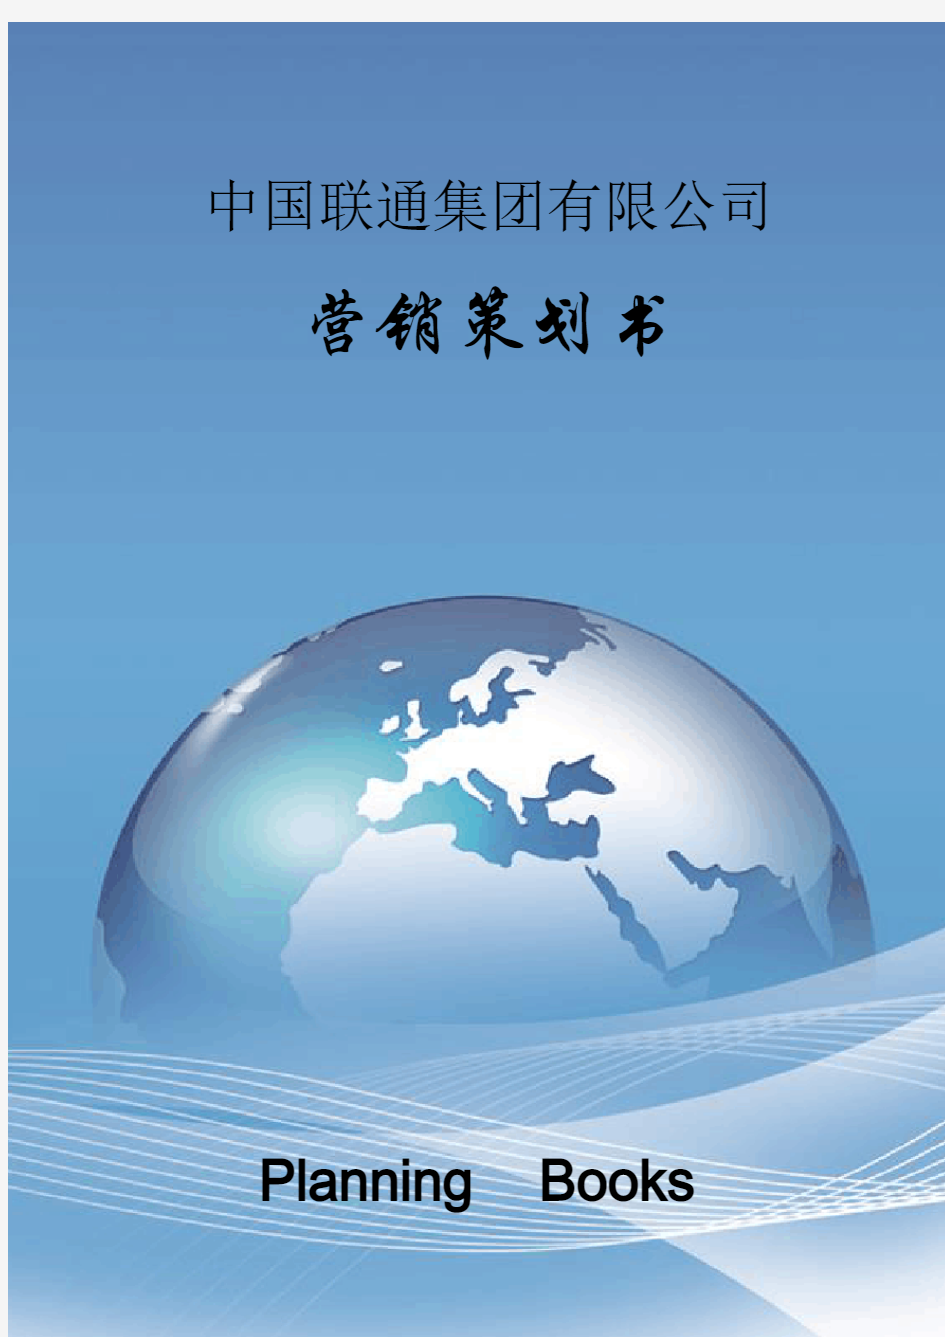 中国联通集团 公司营销策划方案